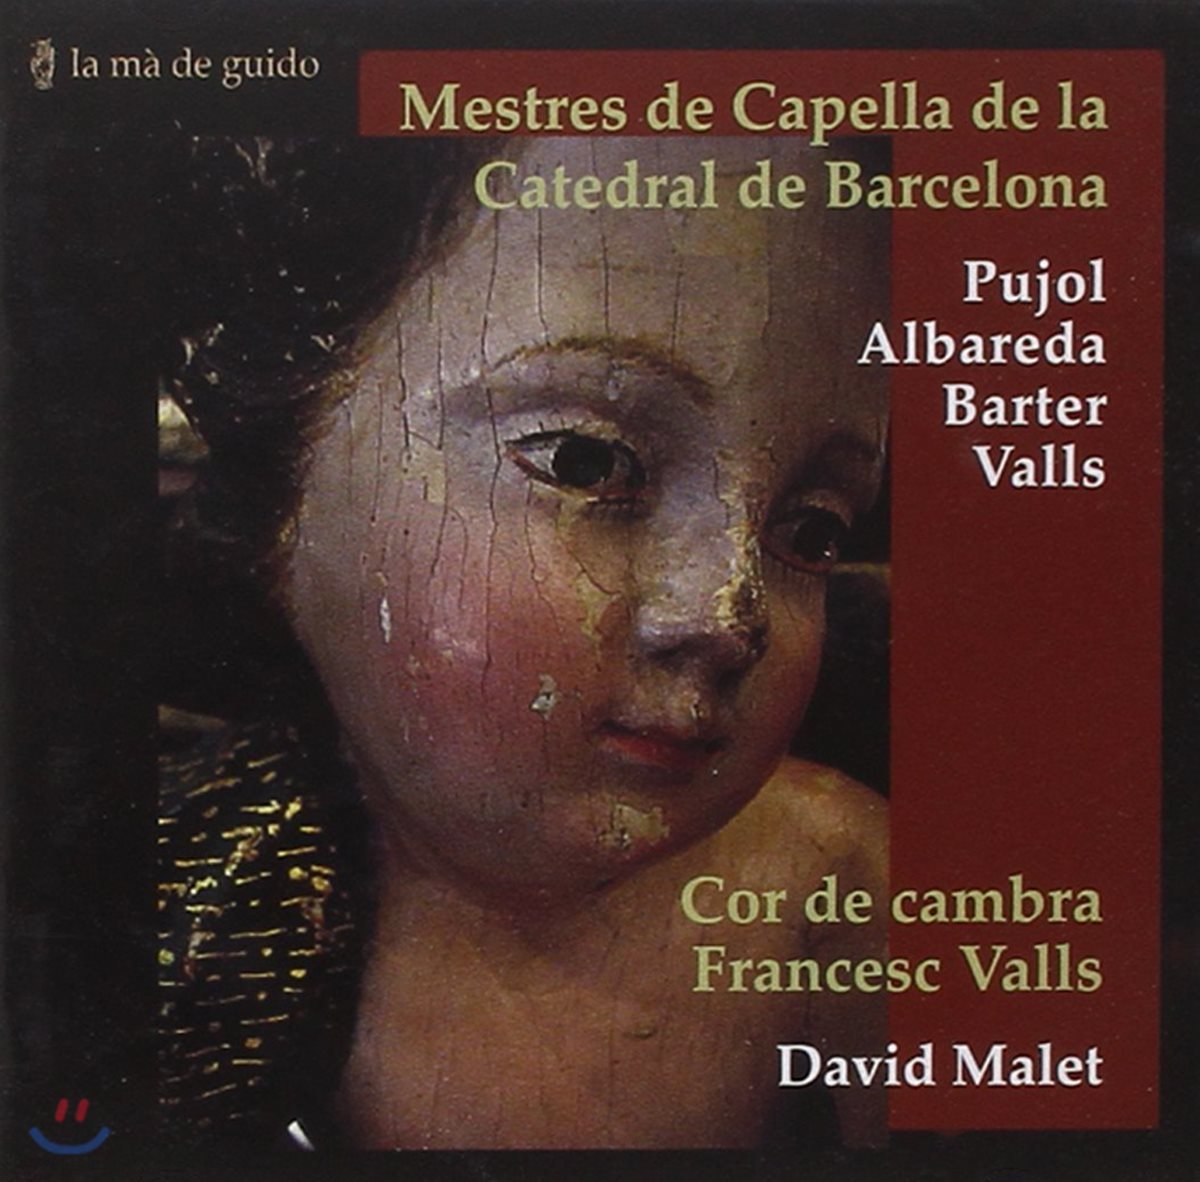 David Malet 17세기 바르셀로나 성당의 교회음악 - 푸욜 / 알바레다 / 바르테르 외 (Mestres de Capella de la Catedral de Barcelona - J.P. Pujol / Albareda / Barter) 프란세스크 발스 실내합창단, 다비드 말레